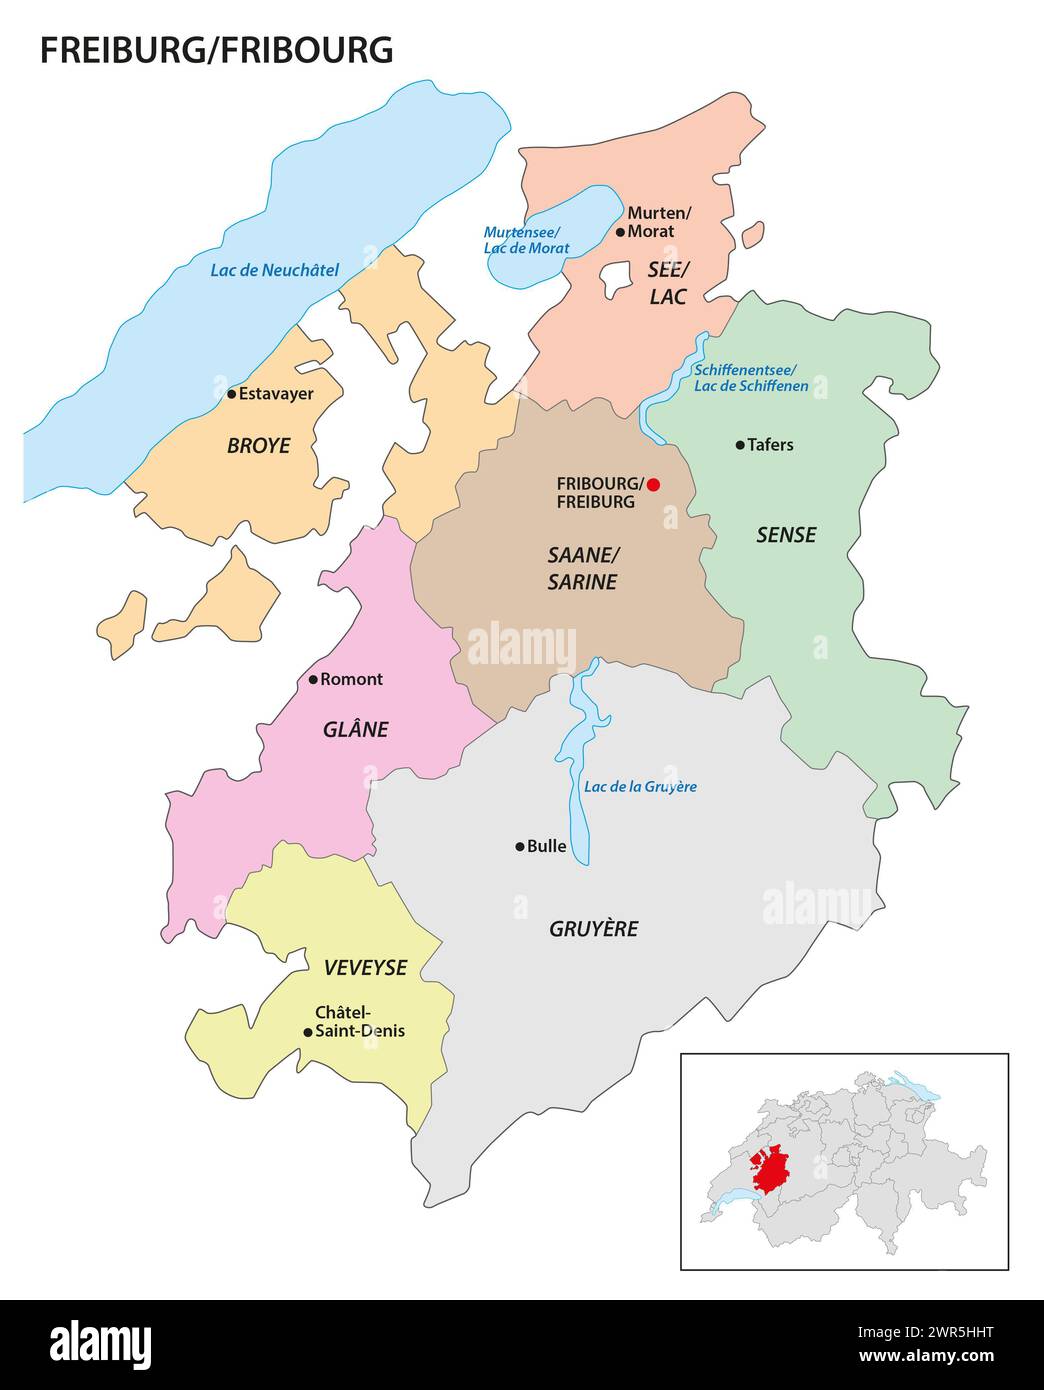 Mappa amministrativa del cantone di Friburgo, Svizzera Foto Stock